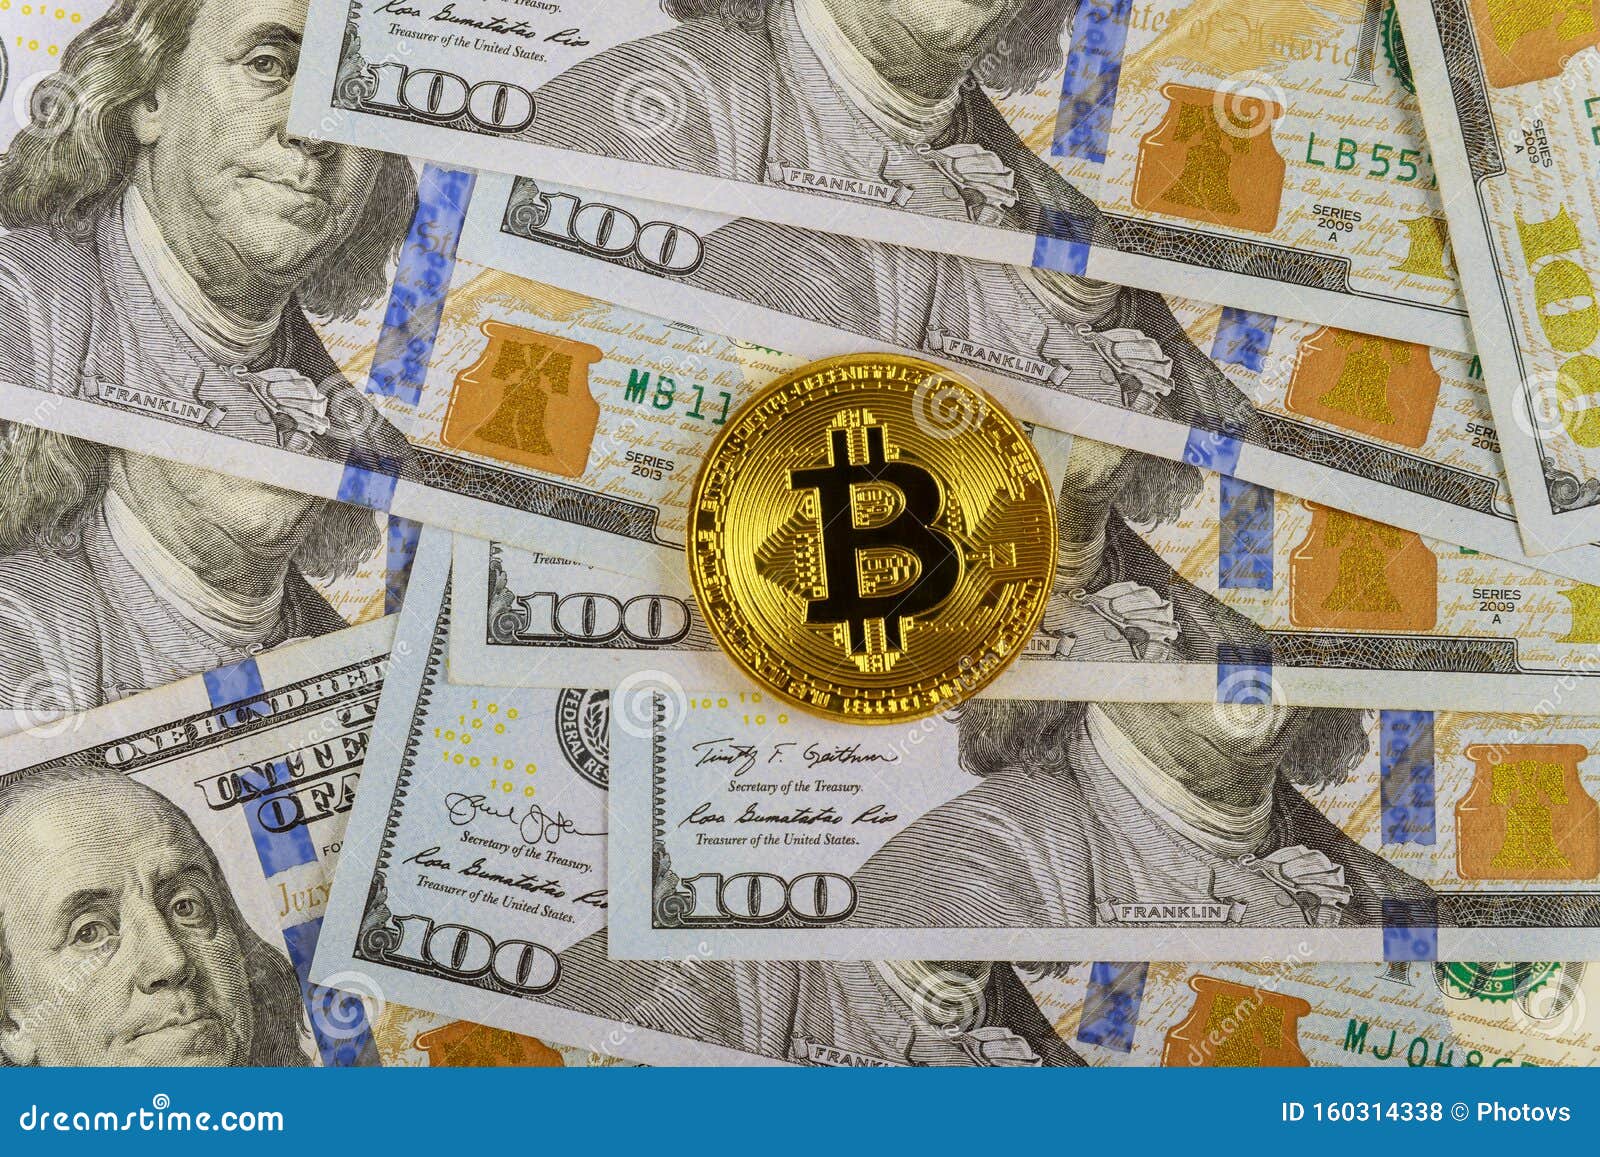 Can i invest 100 dollars in bitcoin 1 dollar bitcoin 2013